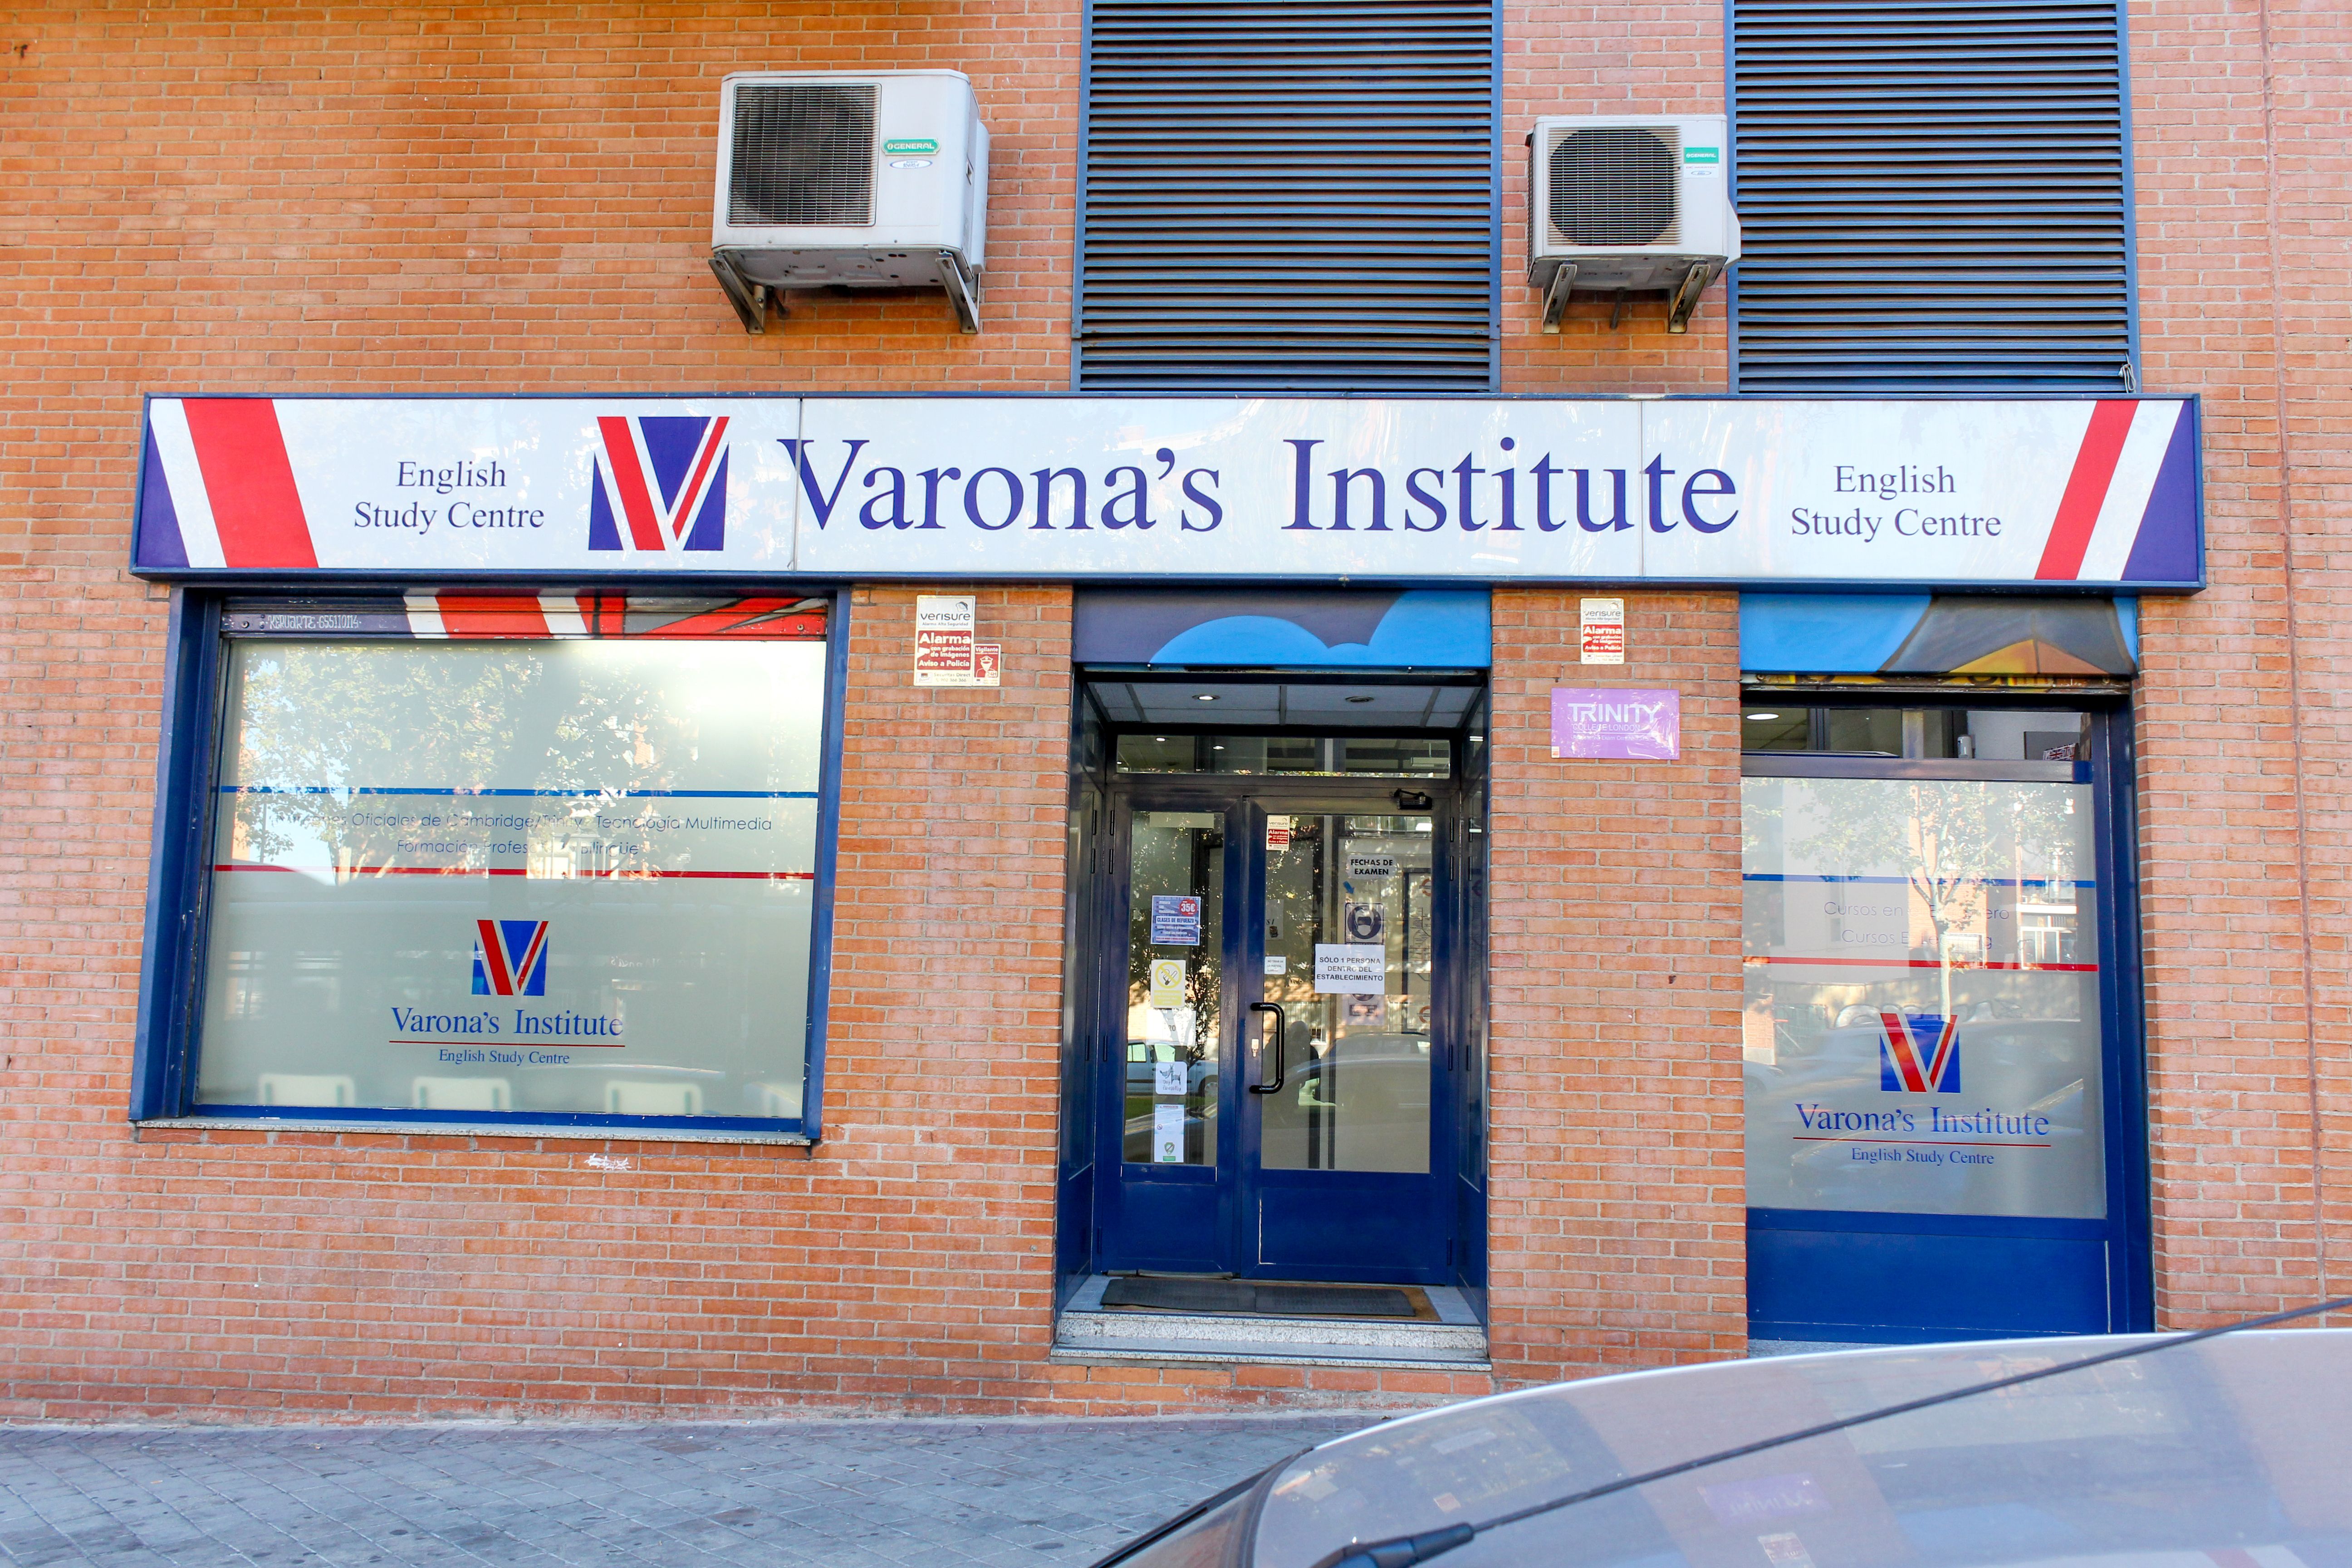 Foto 10 de Academias de idiomas en Madrid | Varona's Institute